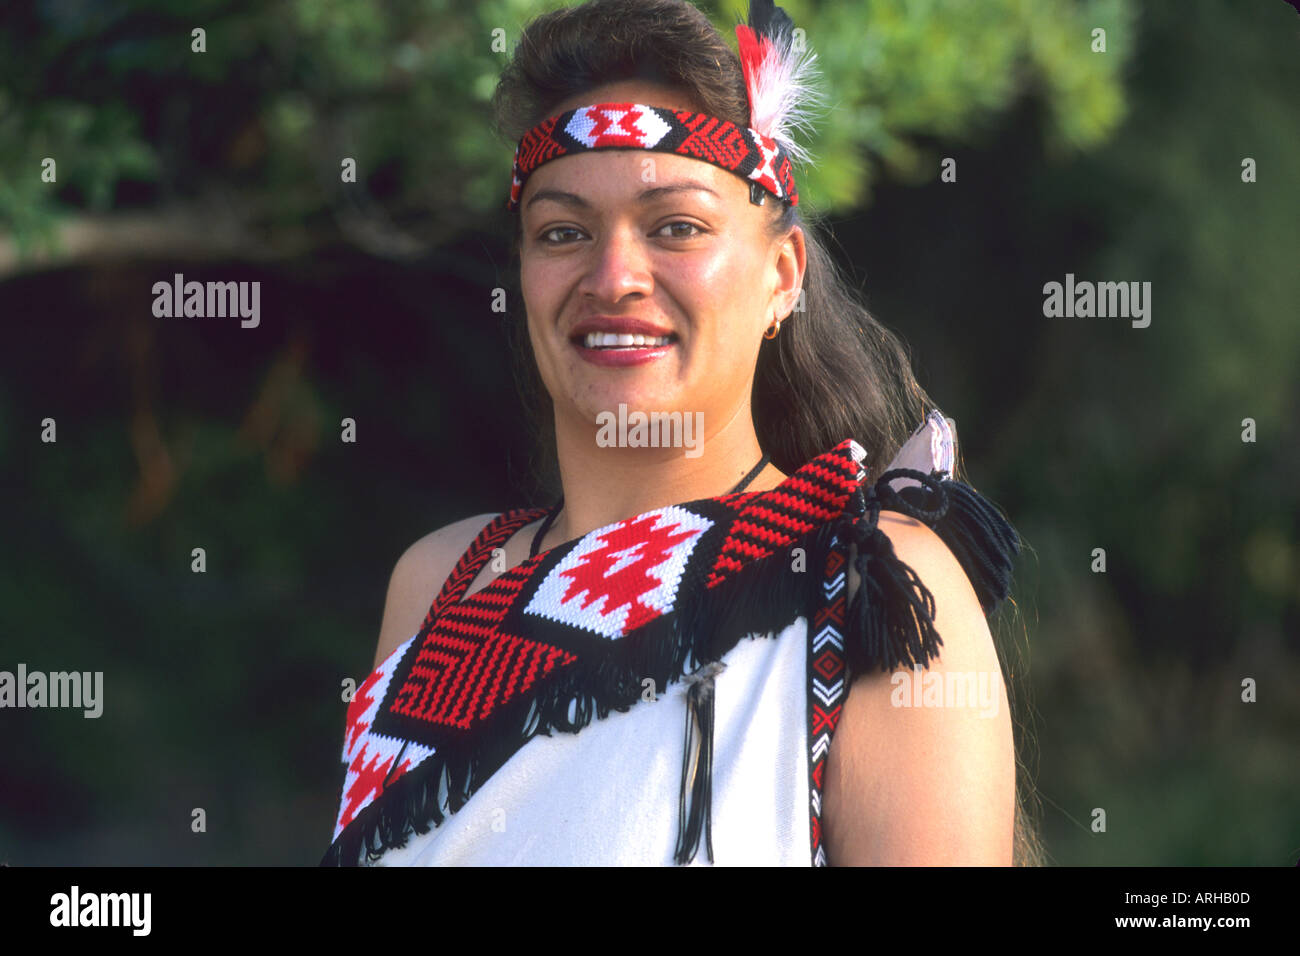 Maori Woman in Rotorua New Zealand Stock Photo: 2972428 - Alamy